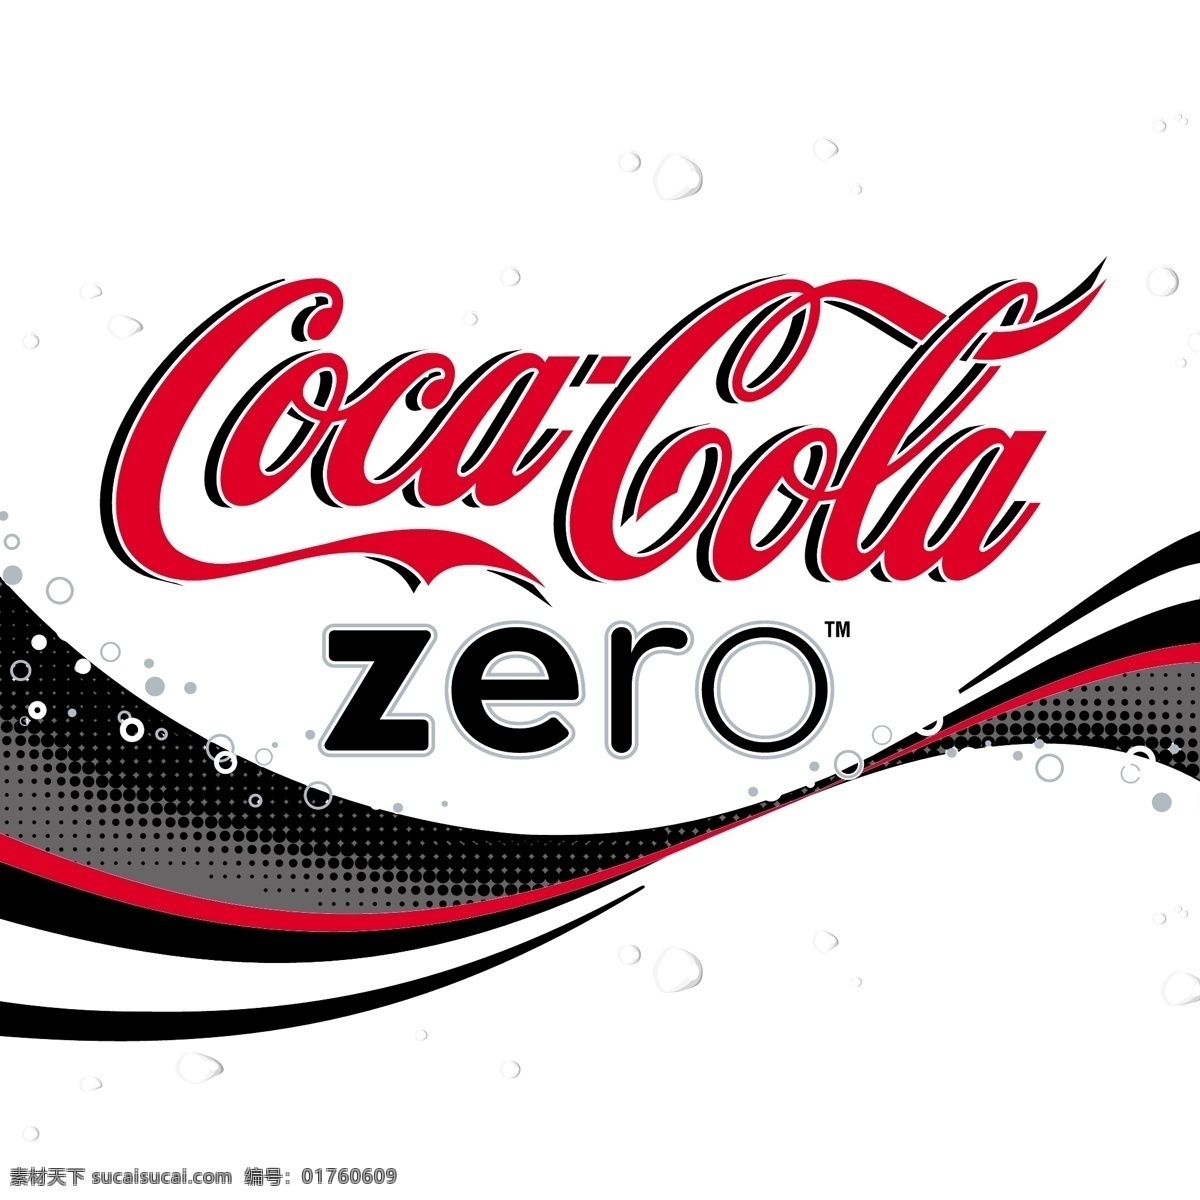 零度 可口可乐 免费 标志